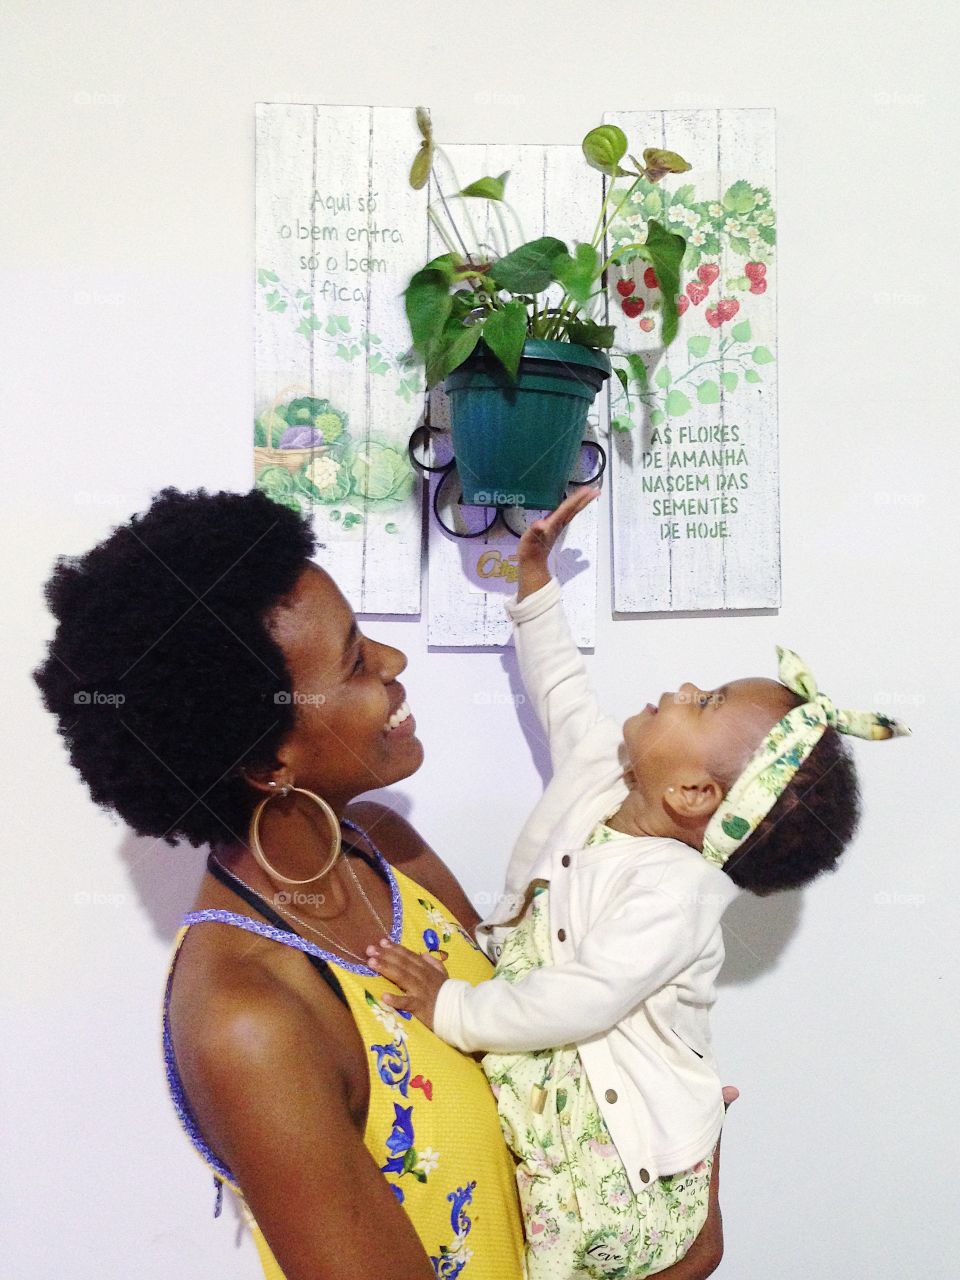 Cuidar de planta vai além de cultivo, é amor. Poder conversar com as crianças sobre o meio ambiente, sobre o cultivo das plantas é extremamente importante para que esse laço de afeto e amor com a natureza não se perca. Ame as plantas! 🌱